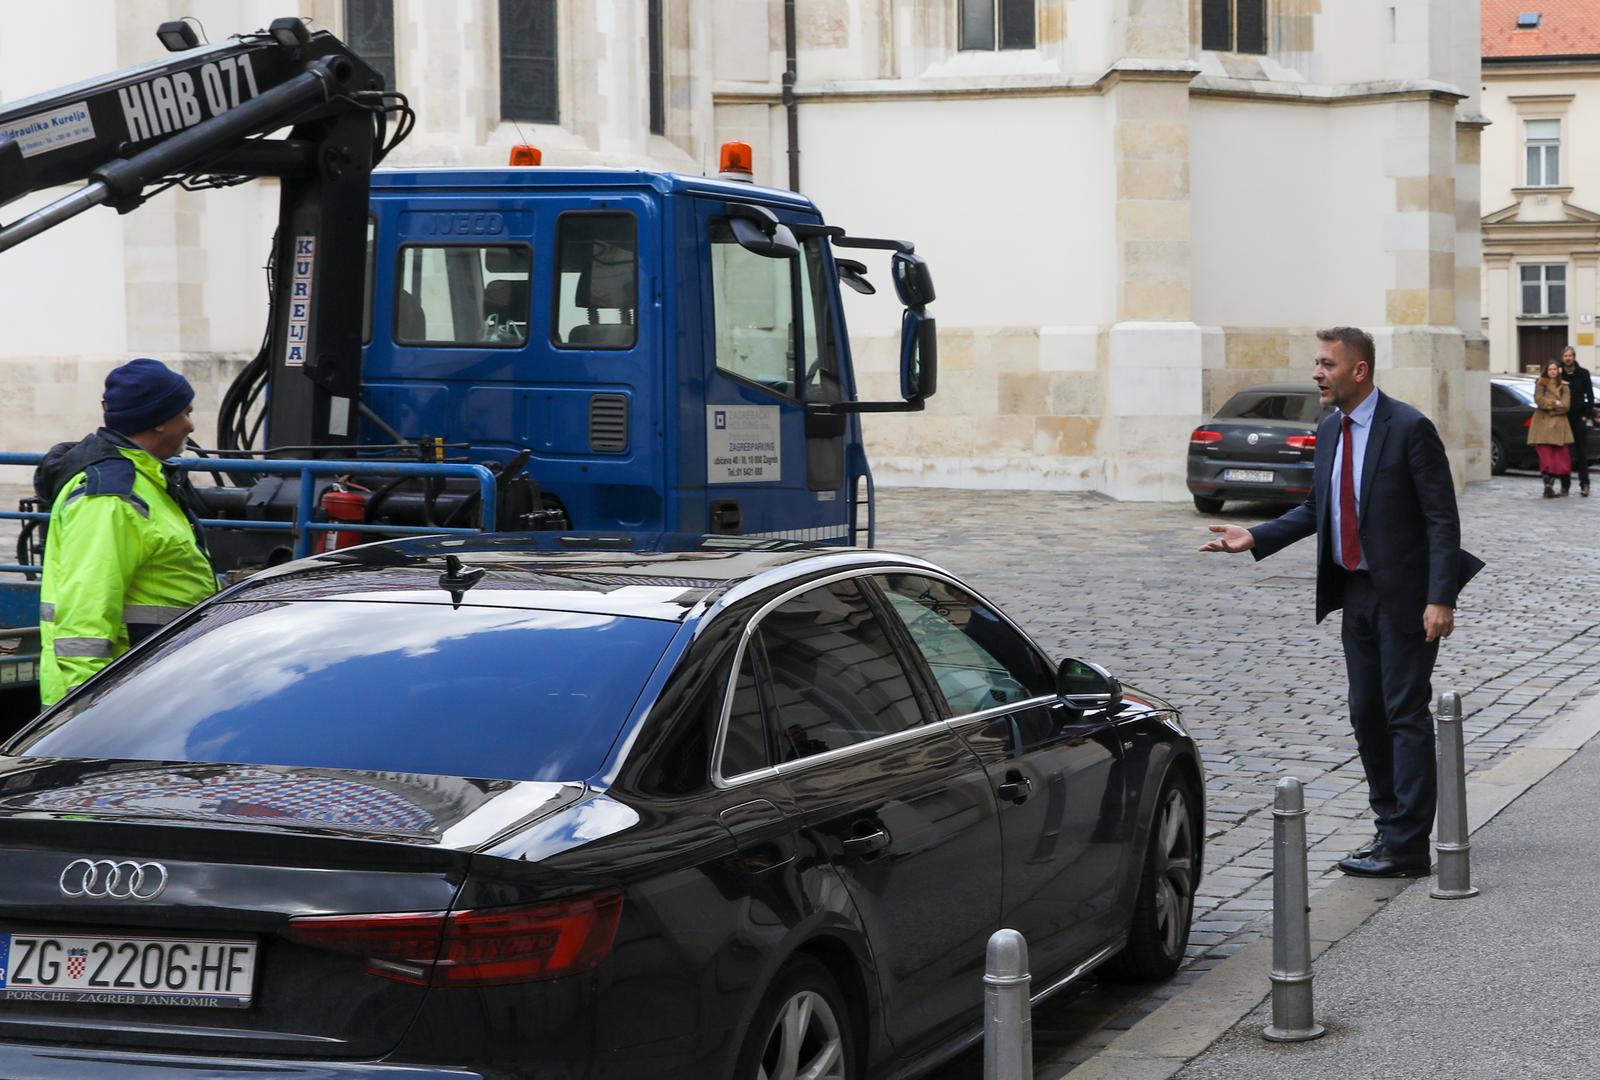 Predsjednik HSS-a Krešo Beljak skoro je ostao bez automobila nakon što su prometni redari s paukom došli podići njegov Audi.